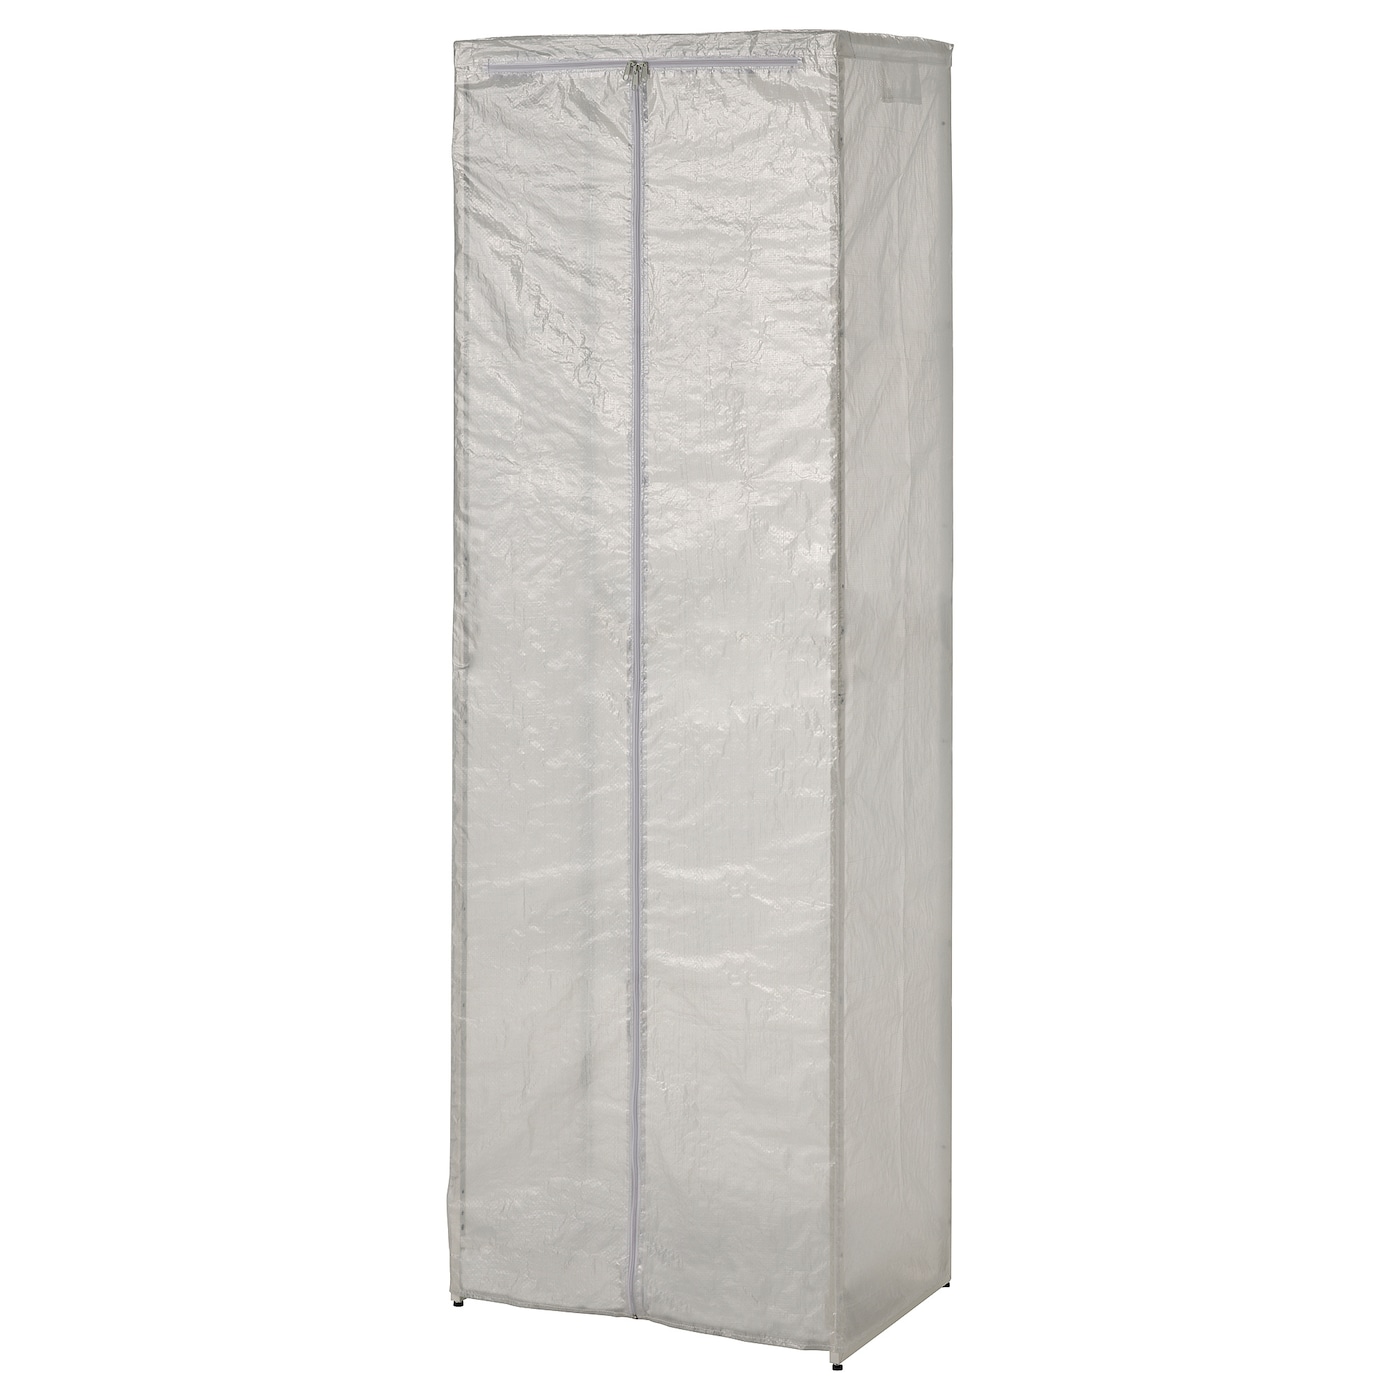 Чехол прозрачный/внутренний/наружный - JOSTEIN IKEA/ЙОСТЕЙН  ИКЕА, 180х61 см, белый